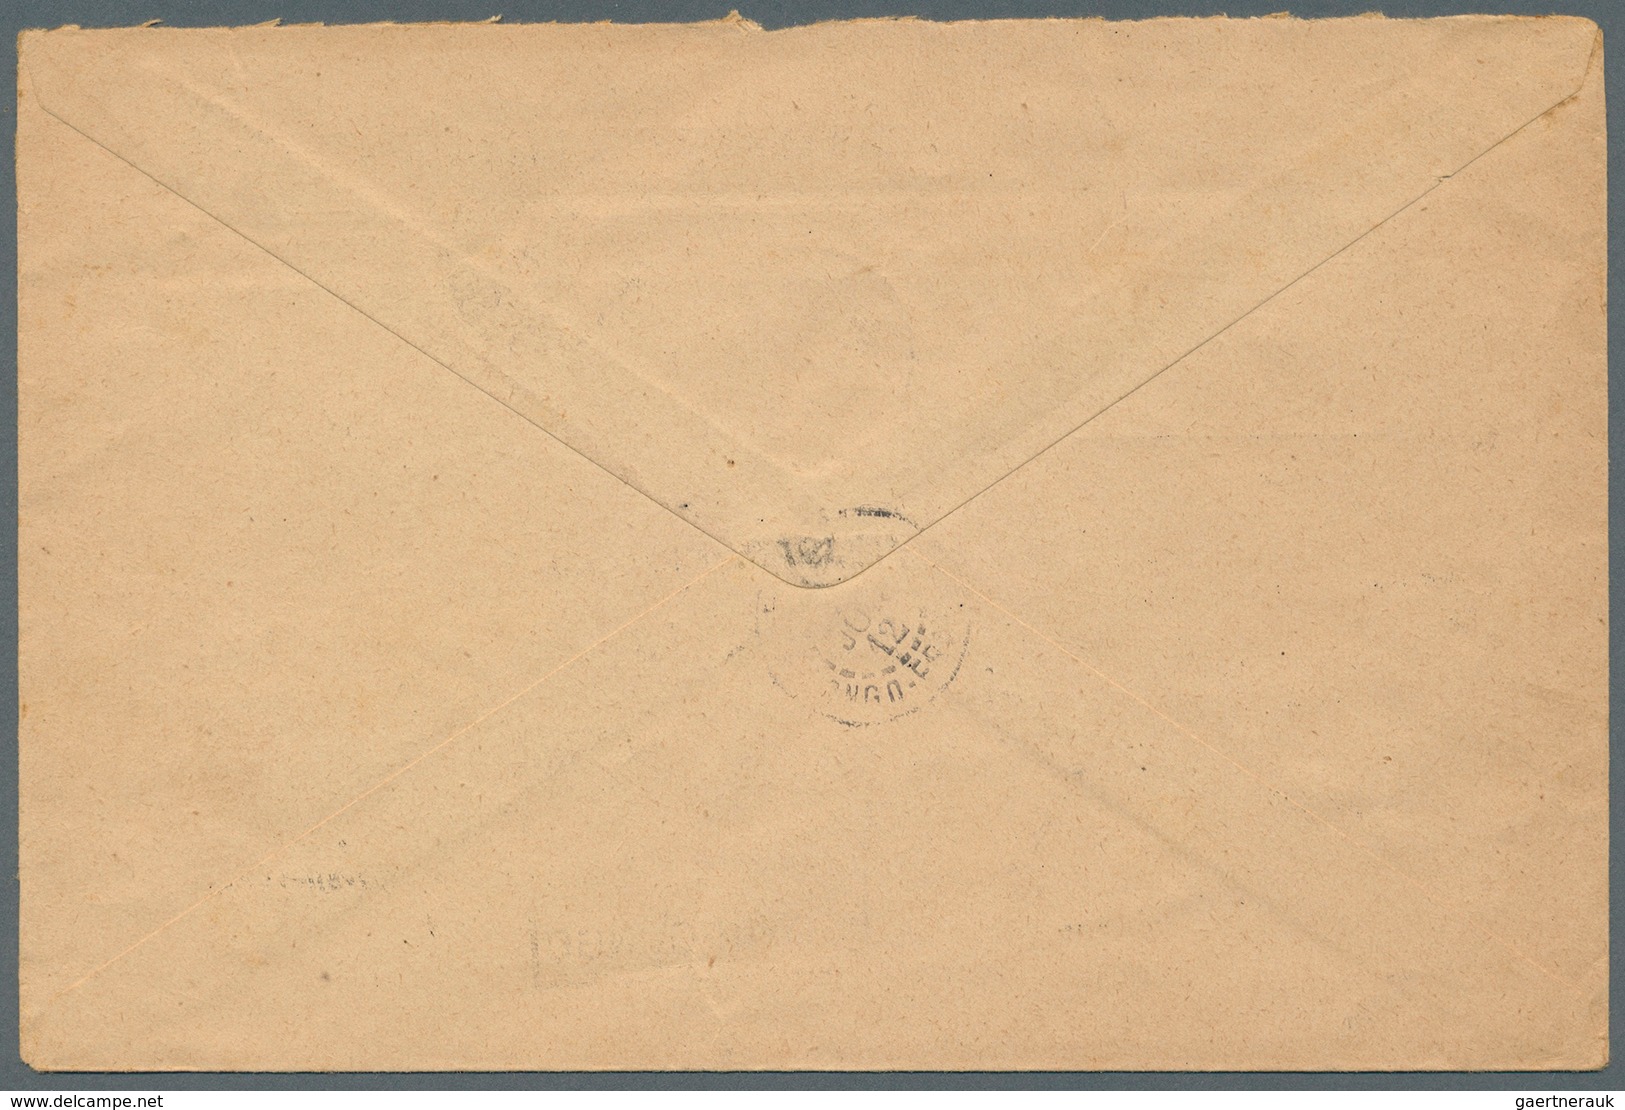 Französisch-Kongo: 1912. Stampless 'Avis D'Emission De Mandat-Poste Local' Envelope Headed 'Afrique - Ungebraucht